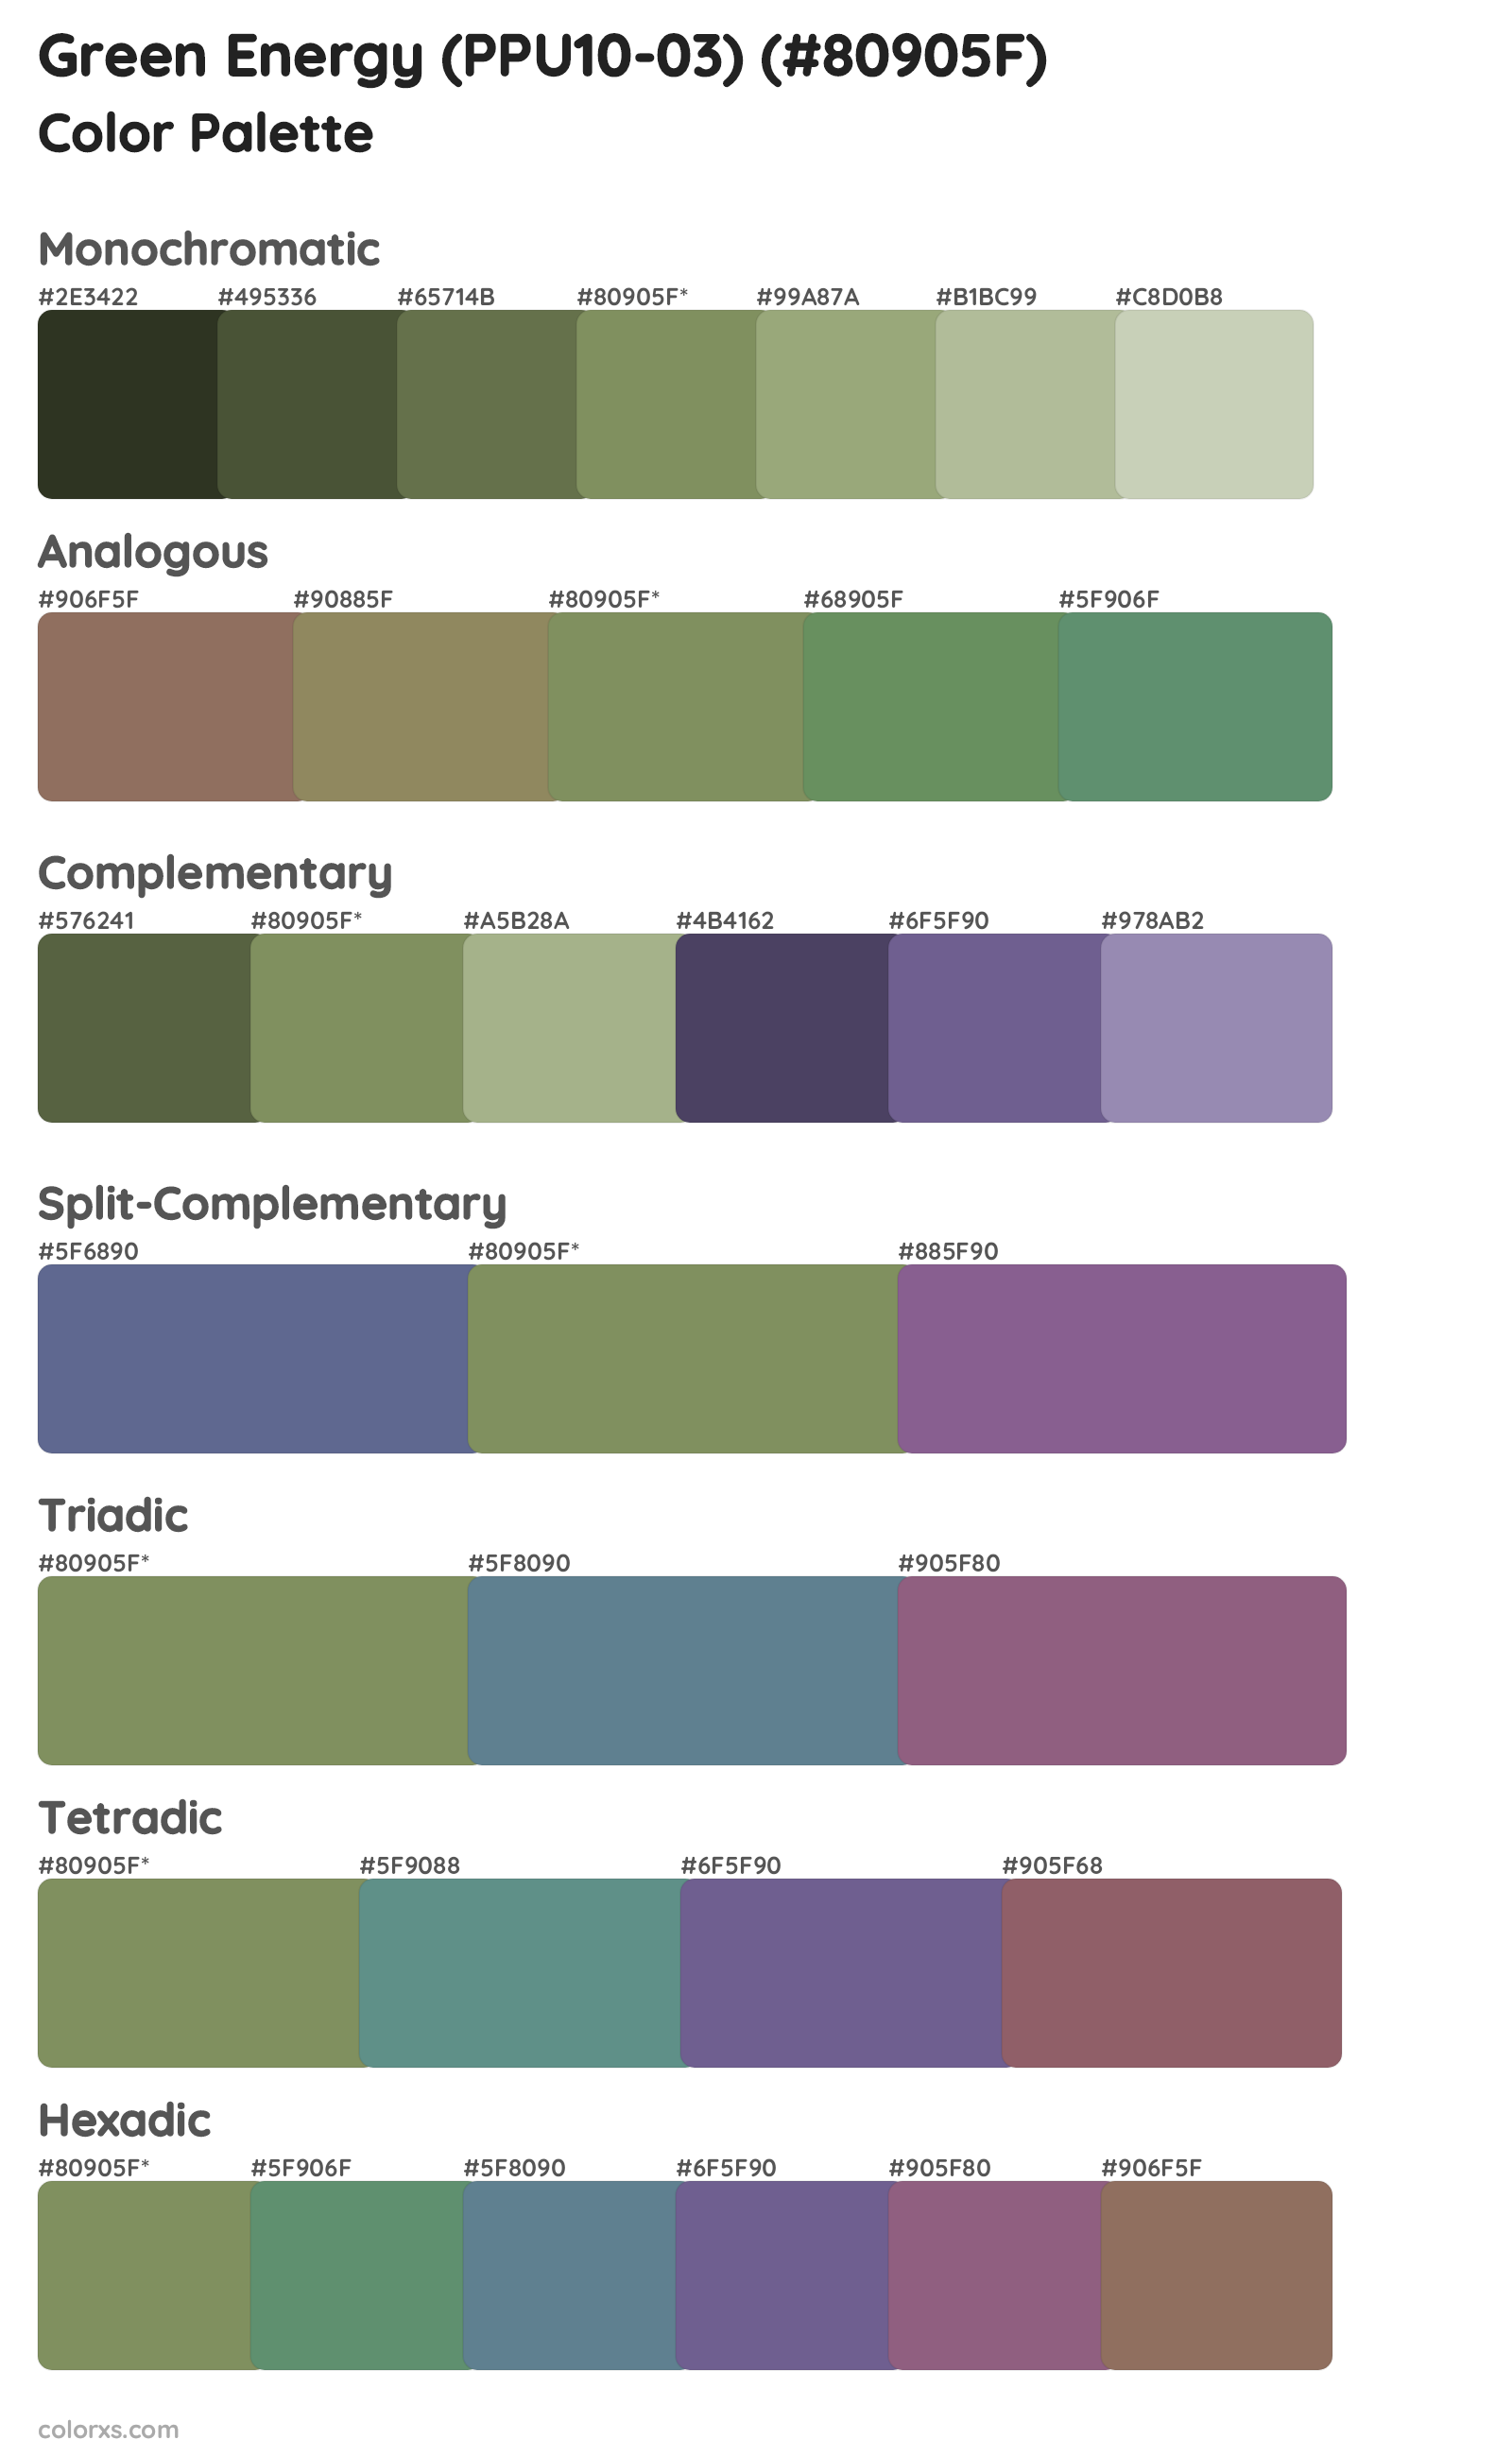 Green Energy (PPU10-03) Color Scheme Palettes